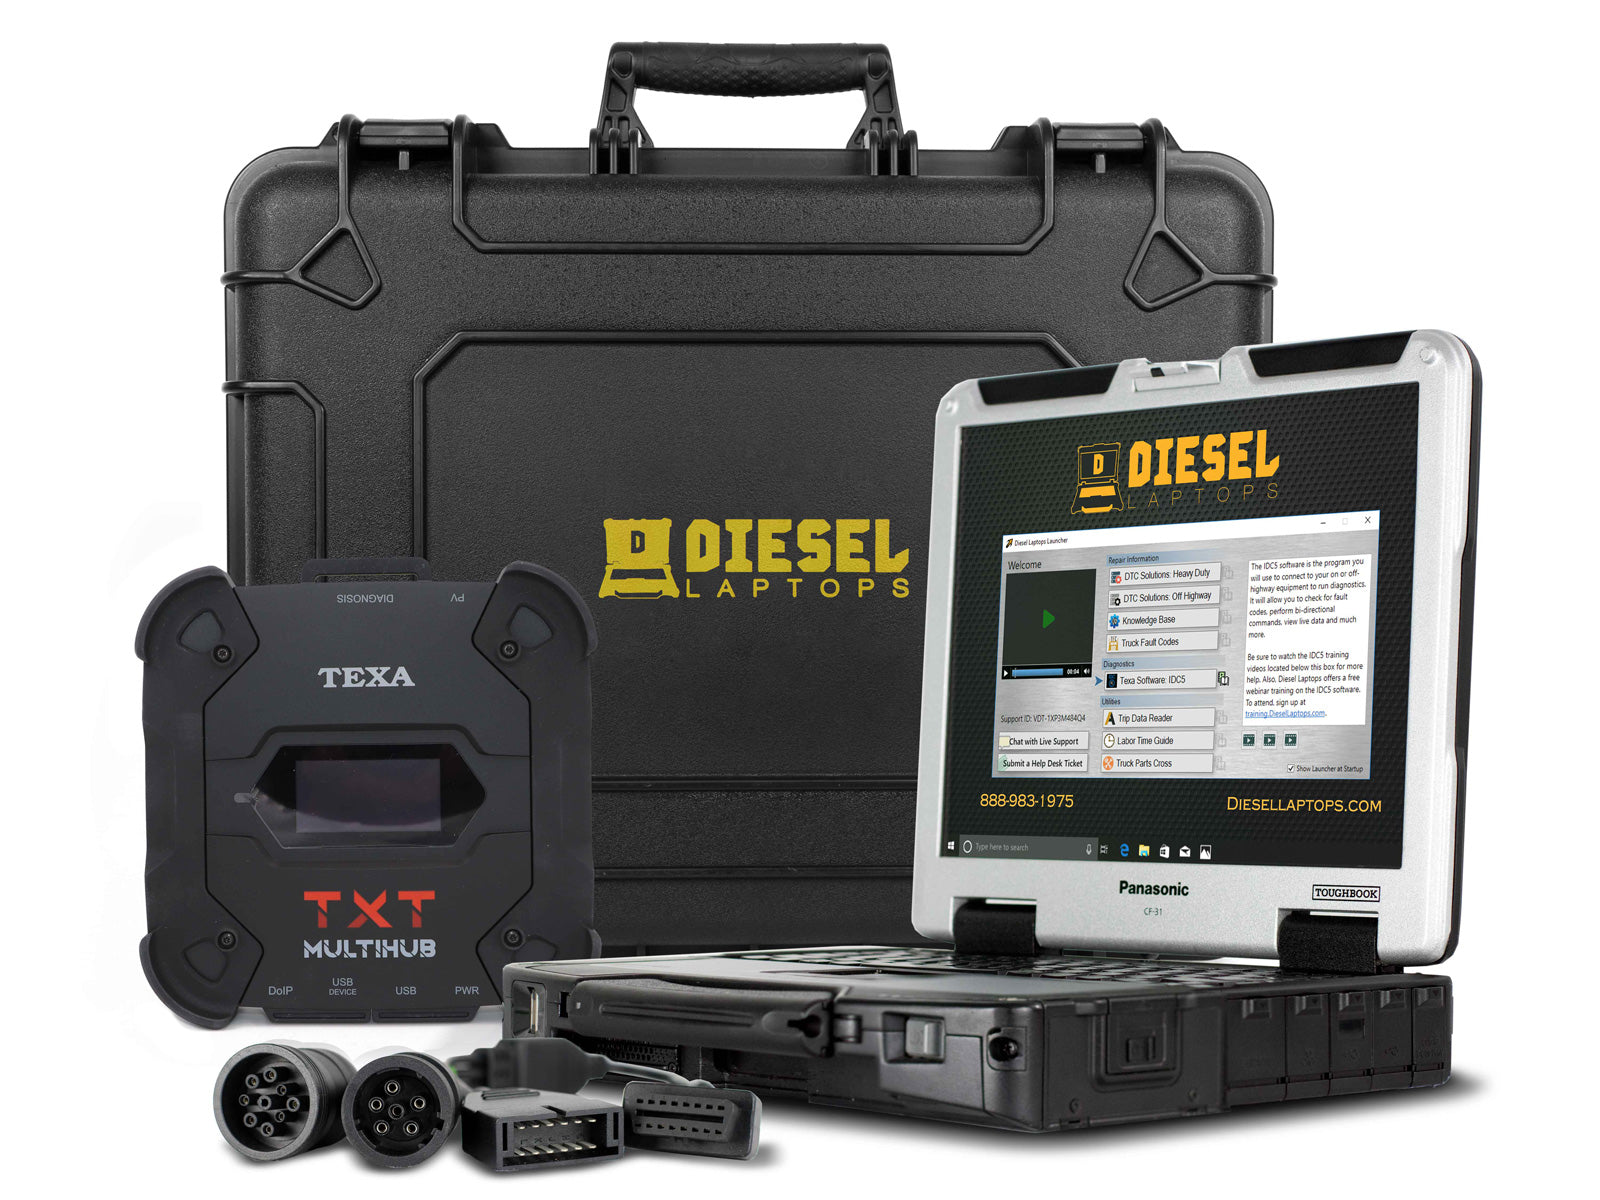 TEXA Dealer Level Truck Scanner Tool with Laptop — Diesel Laptops